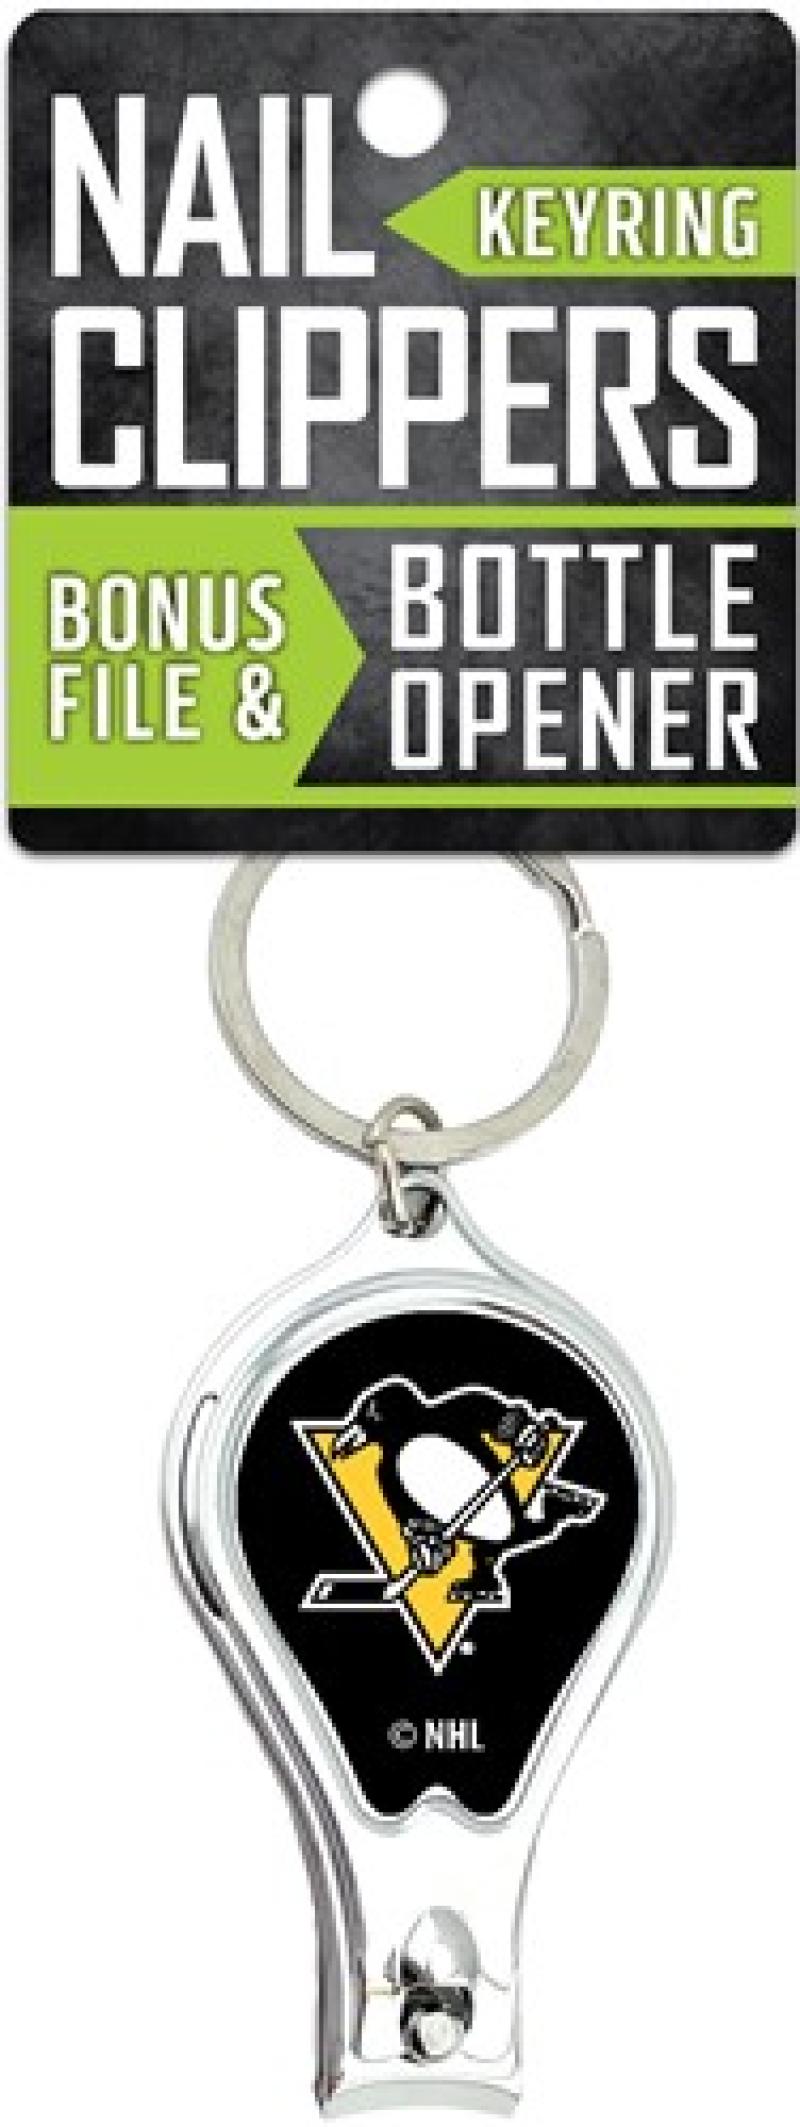 Pittsburgh Penguins Nail Clipper Keyring w/Bonus File & Bottle Opener Image 1